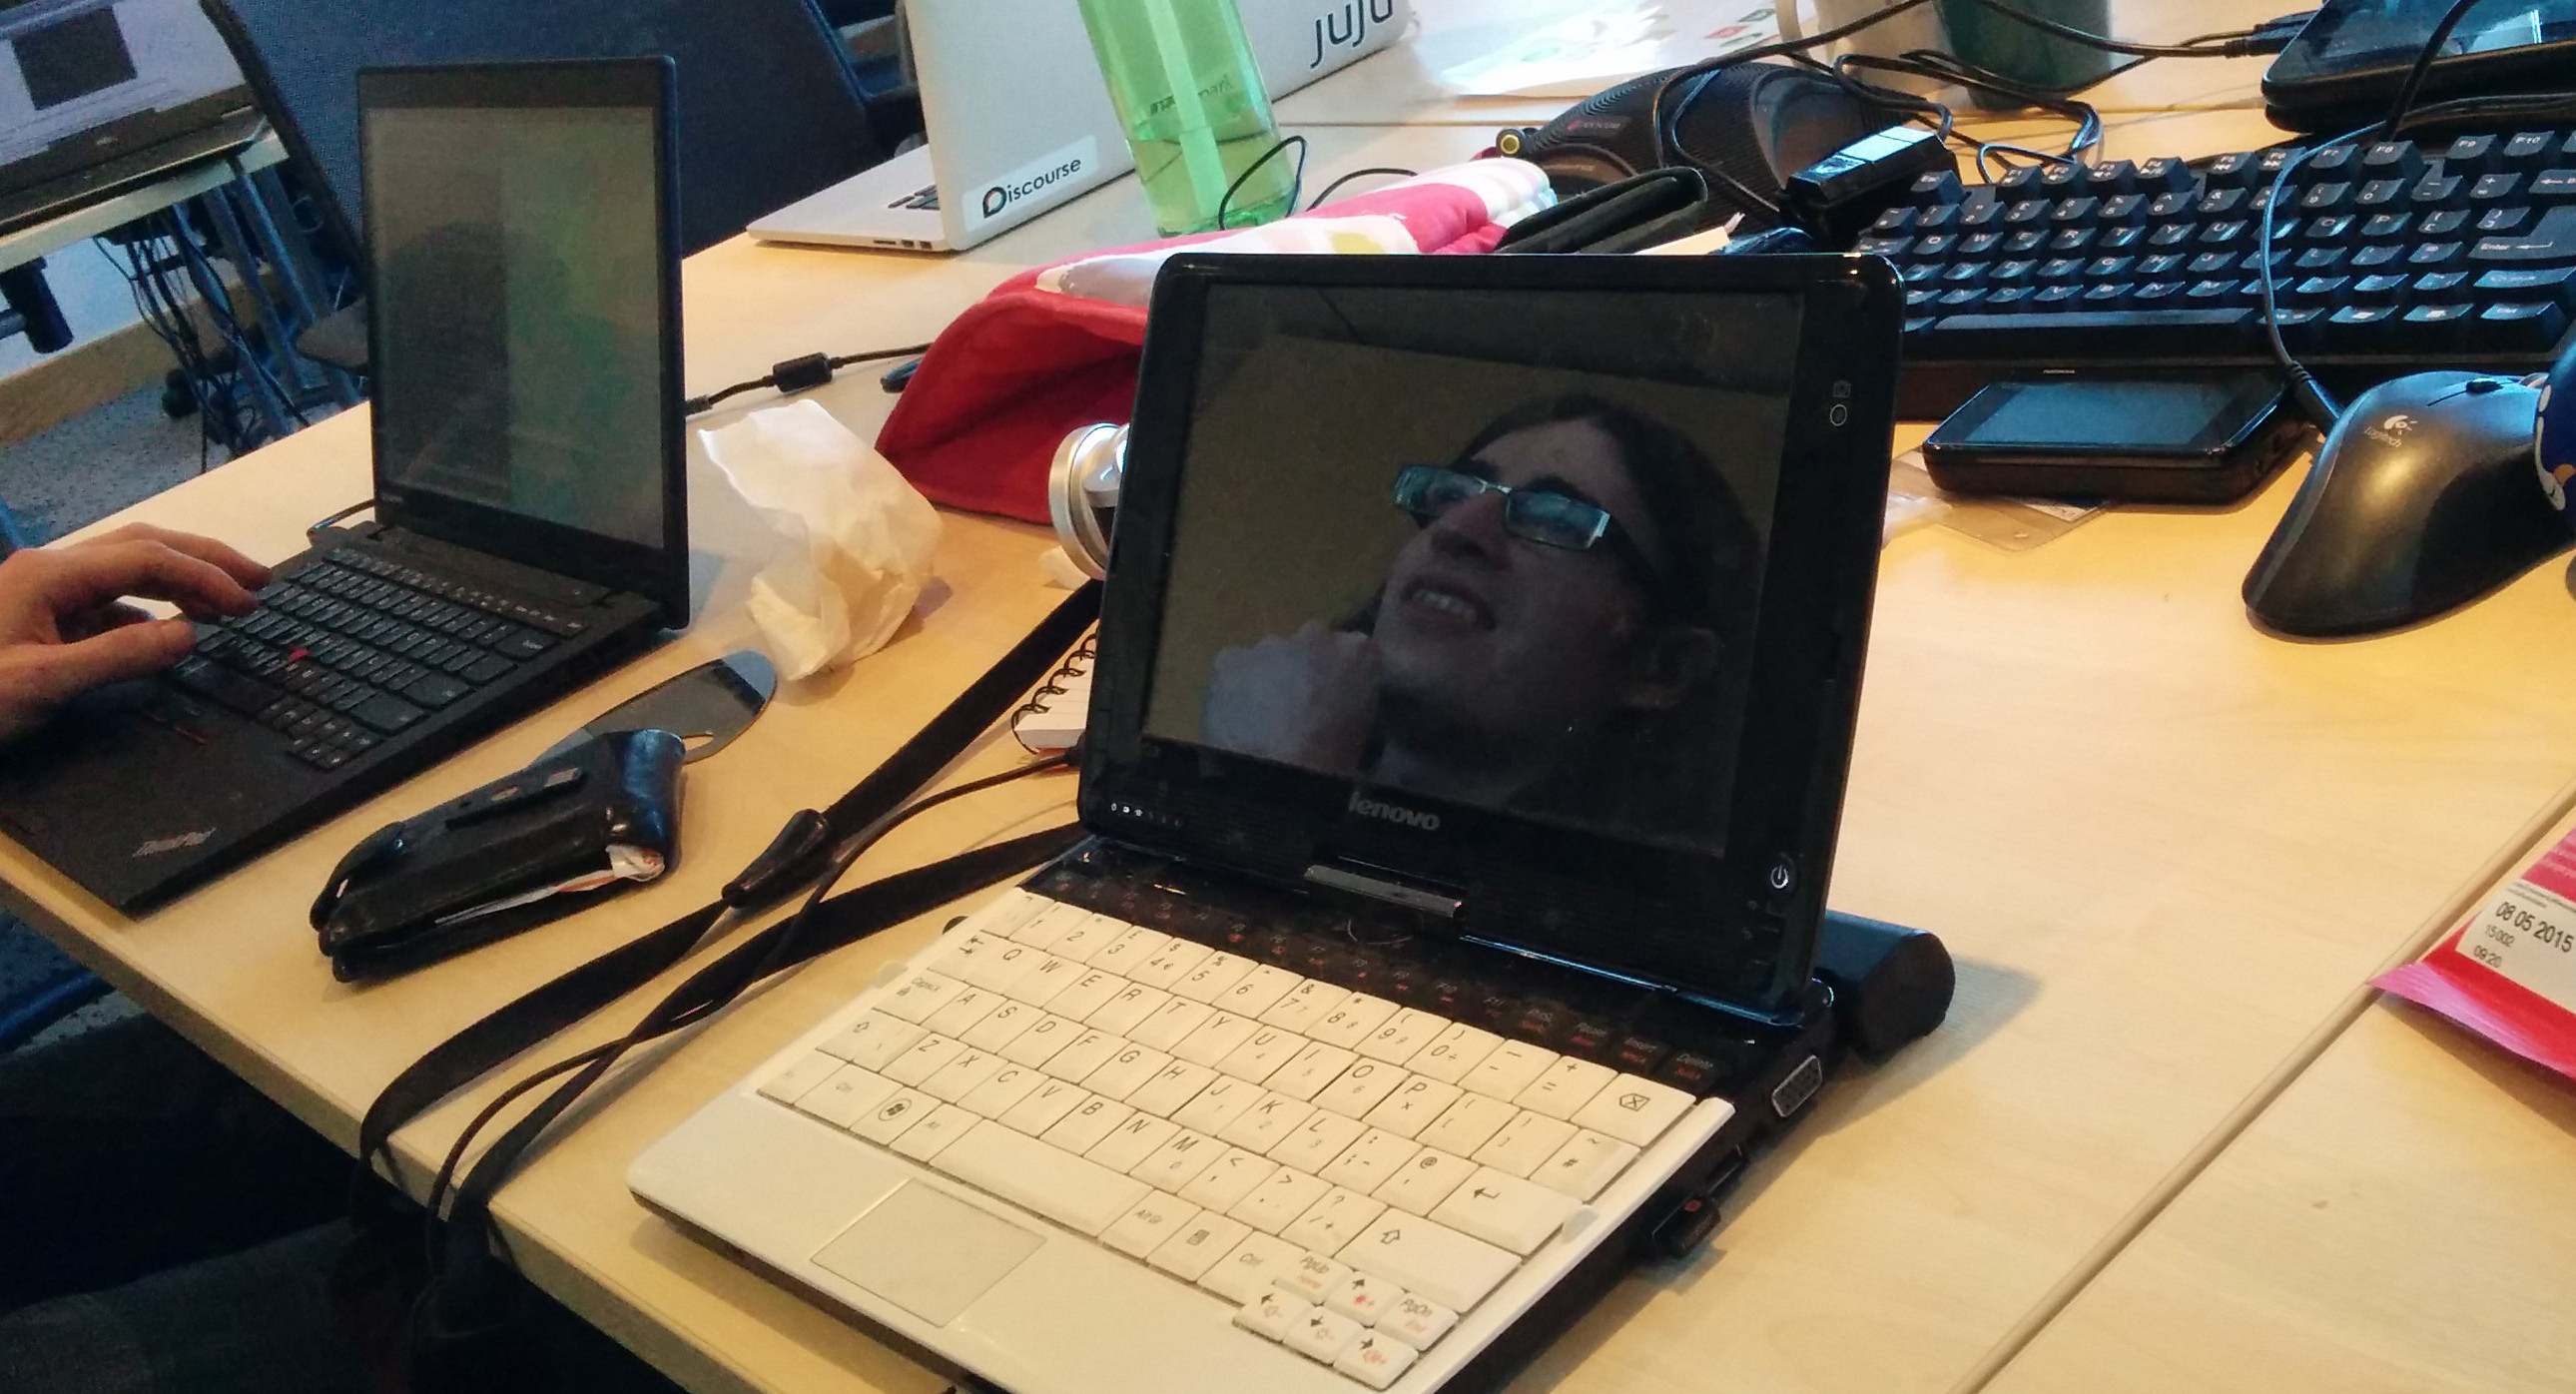 Reflection of David King in Kat's laptop screen